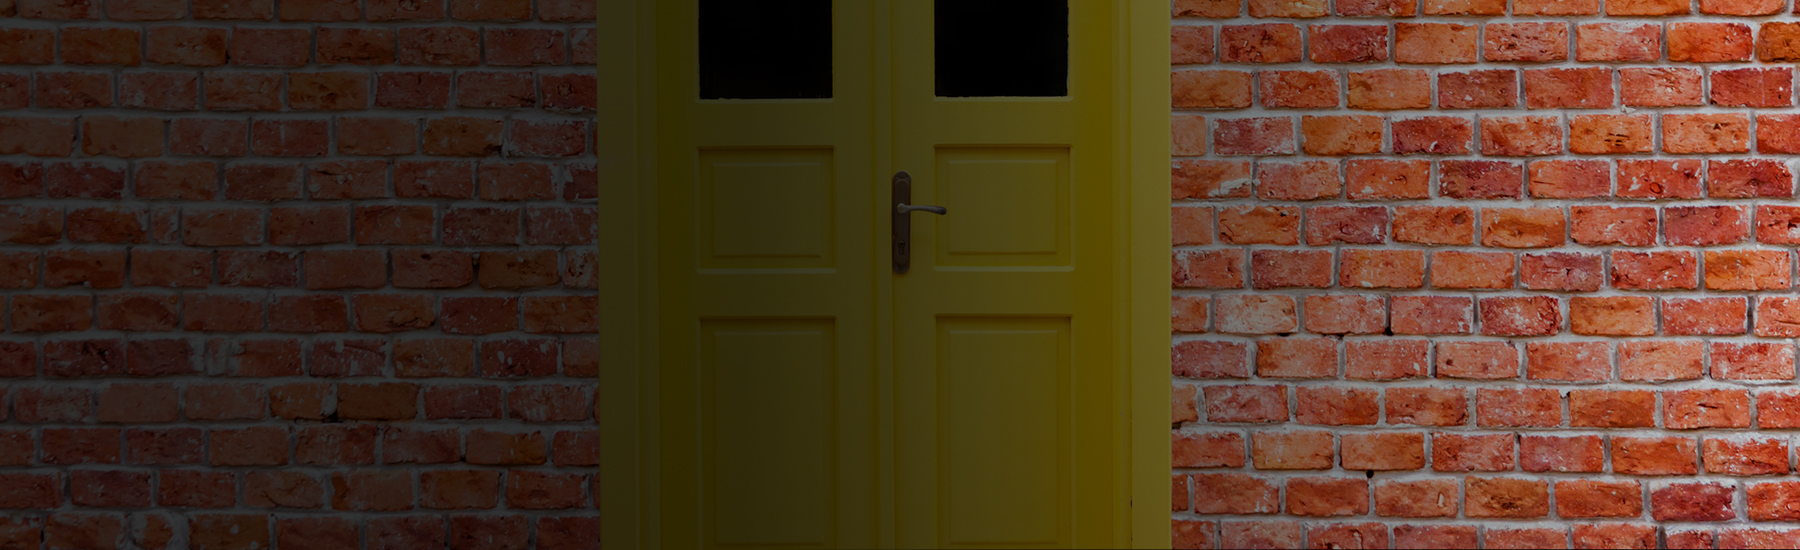 Yellow door on a brick wall